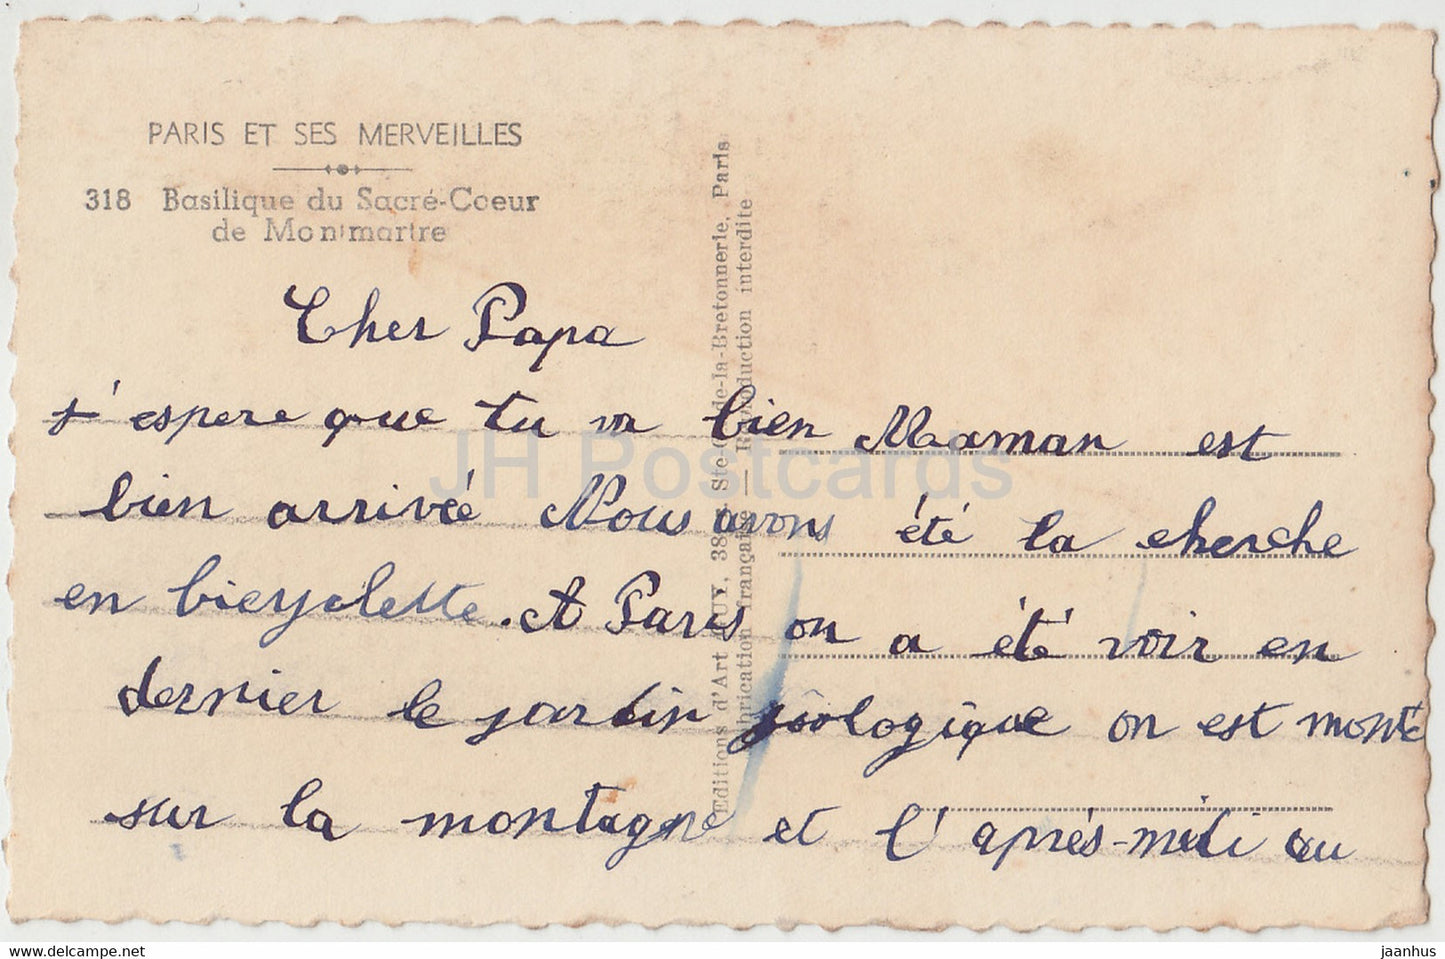 Paris - Basilique du Sacre Coeur de Montmartre - Kathedrale - 318 - alte Postkarte - Frankreich - gebraucht